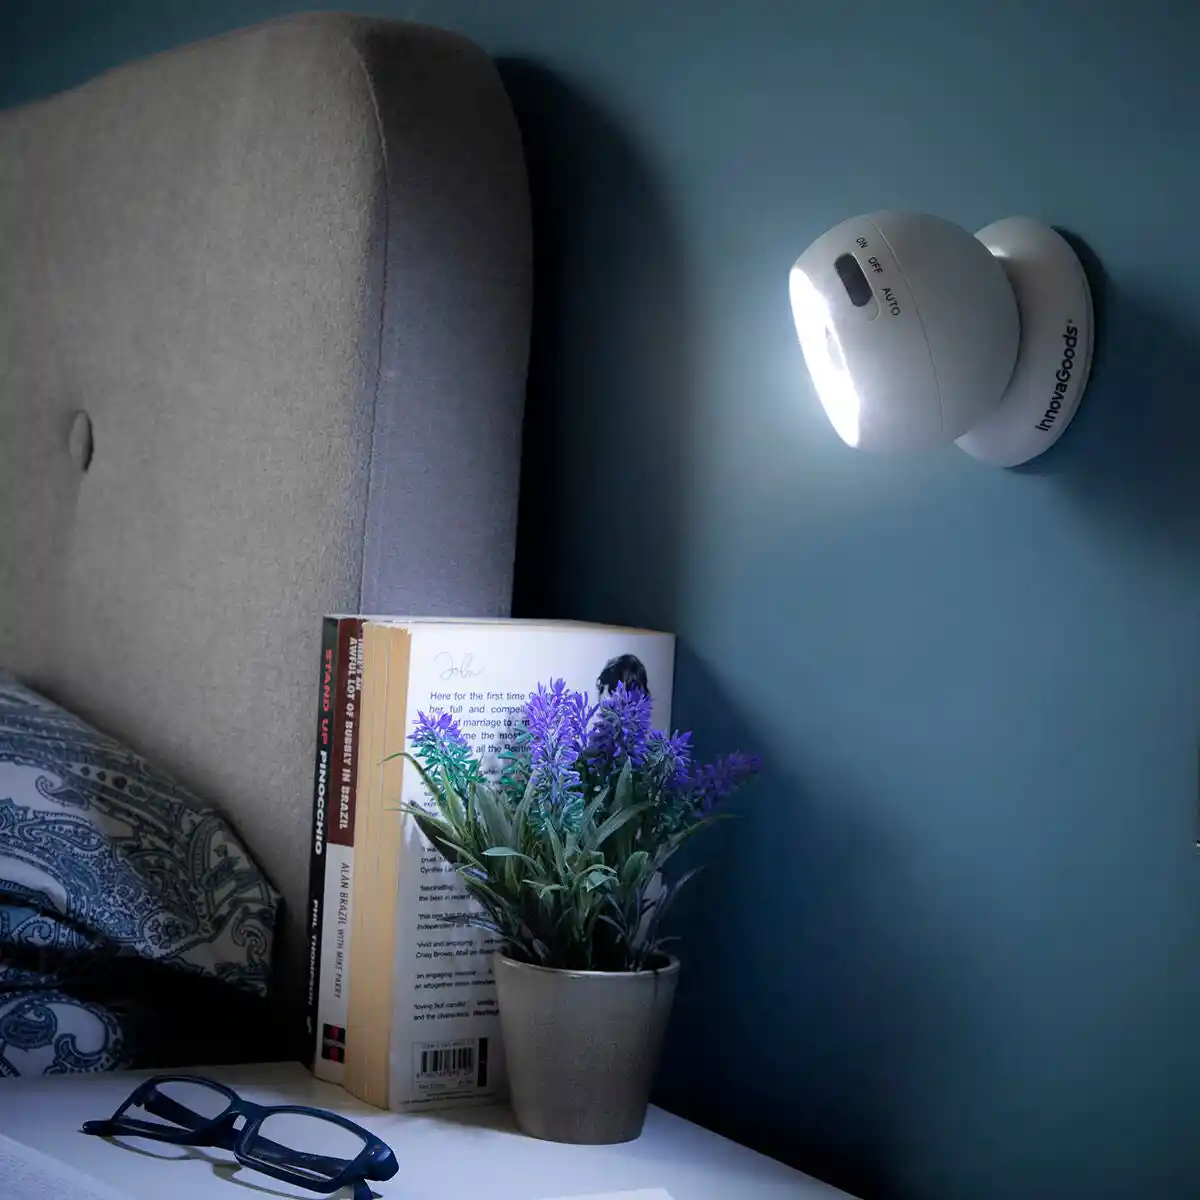 Eclairage LED pour WC / Capteur de Mouvement Luminaire pour